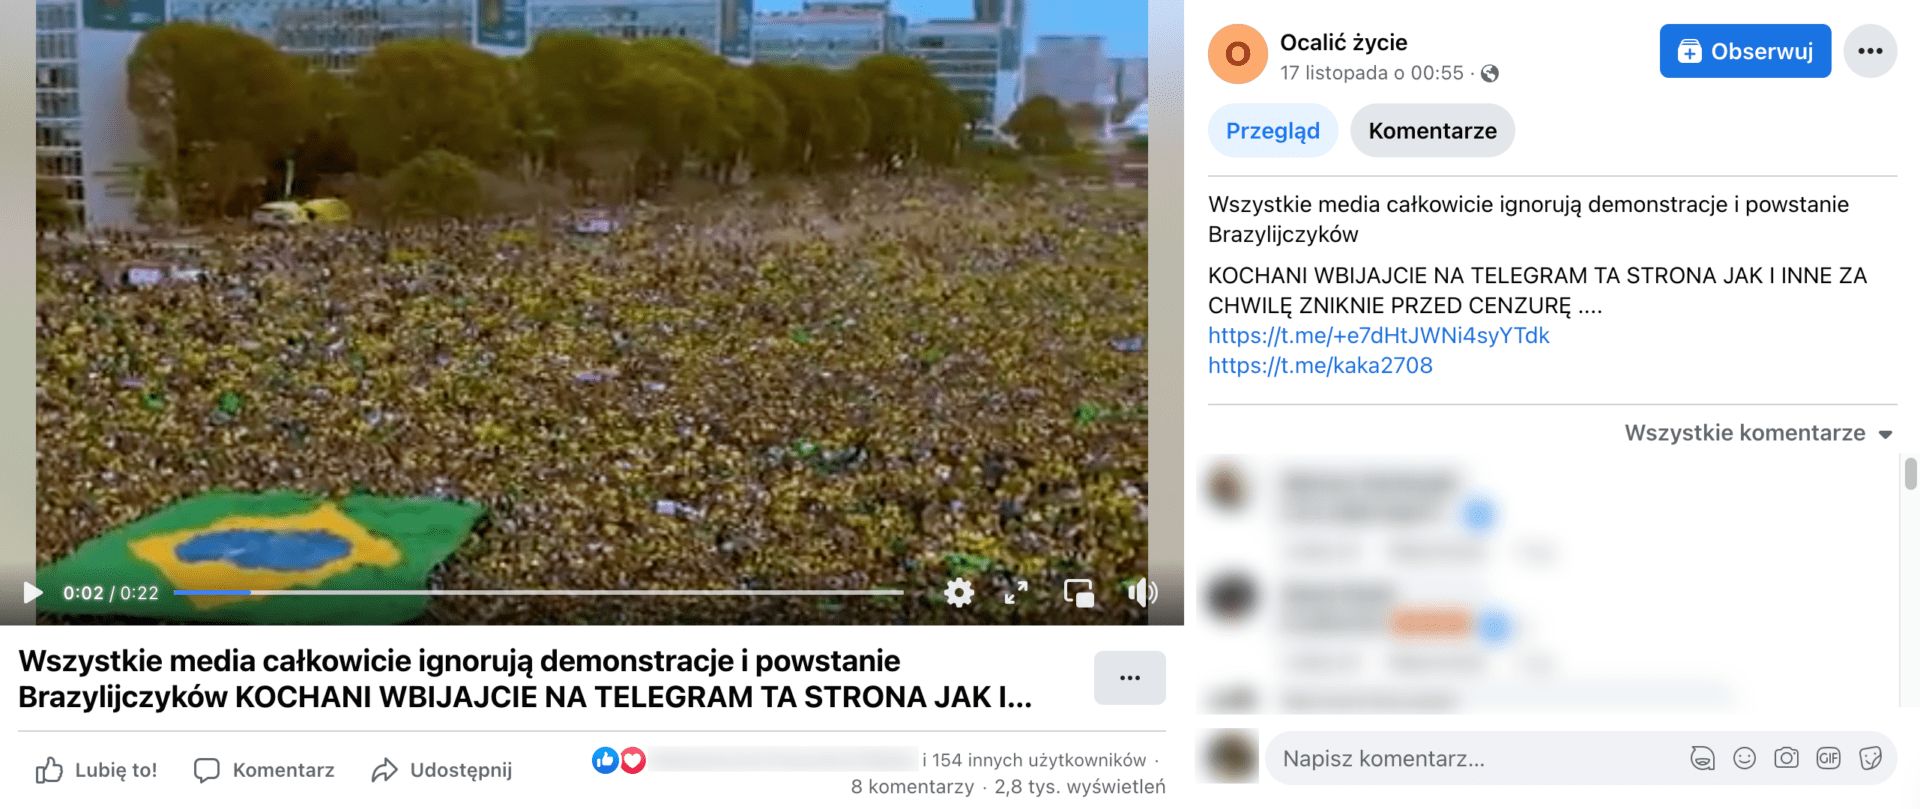 Zrzut ekranu posta, w którym zamieszczono opisywane nagranie. Widoczny jest tłum ludzi wymachujących brazylijskimi flagami.